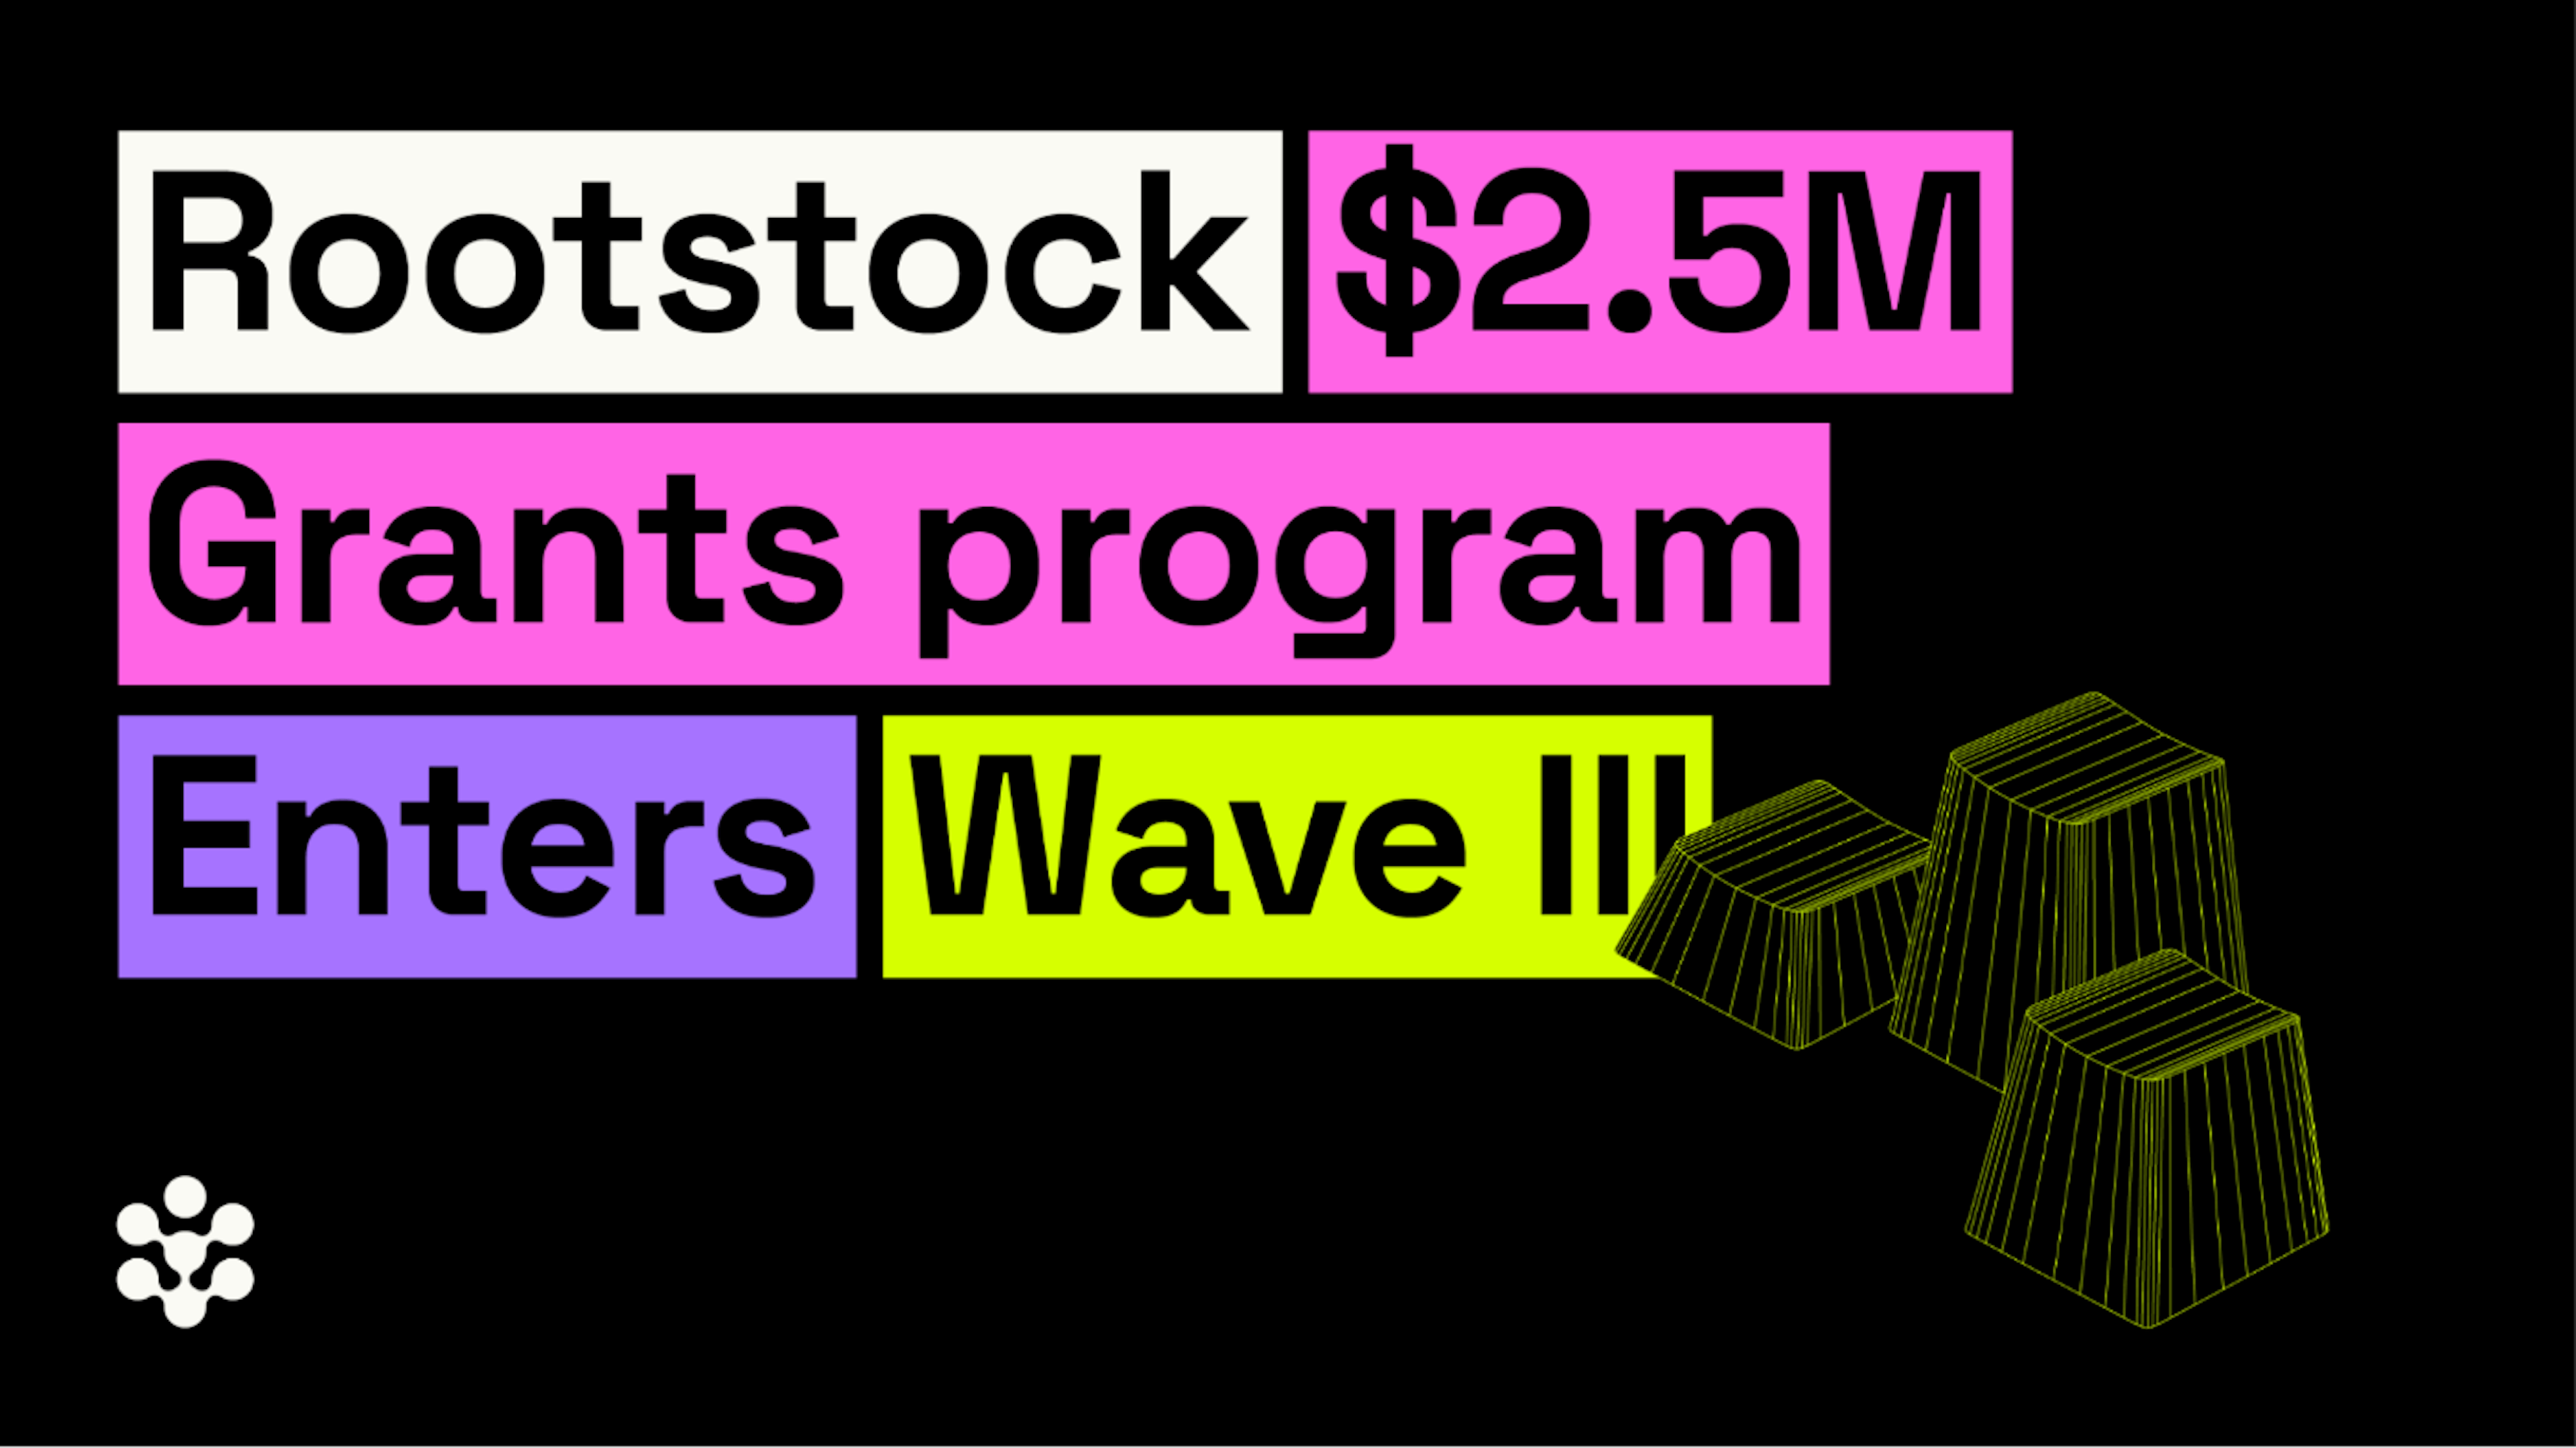 featured image - Chương trình tài trợ Rootstock trị giá 2,5 triệu USD bước vào làn sóng III